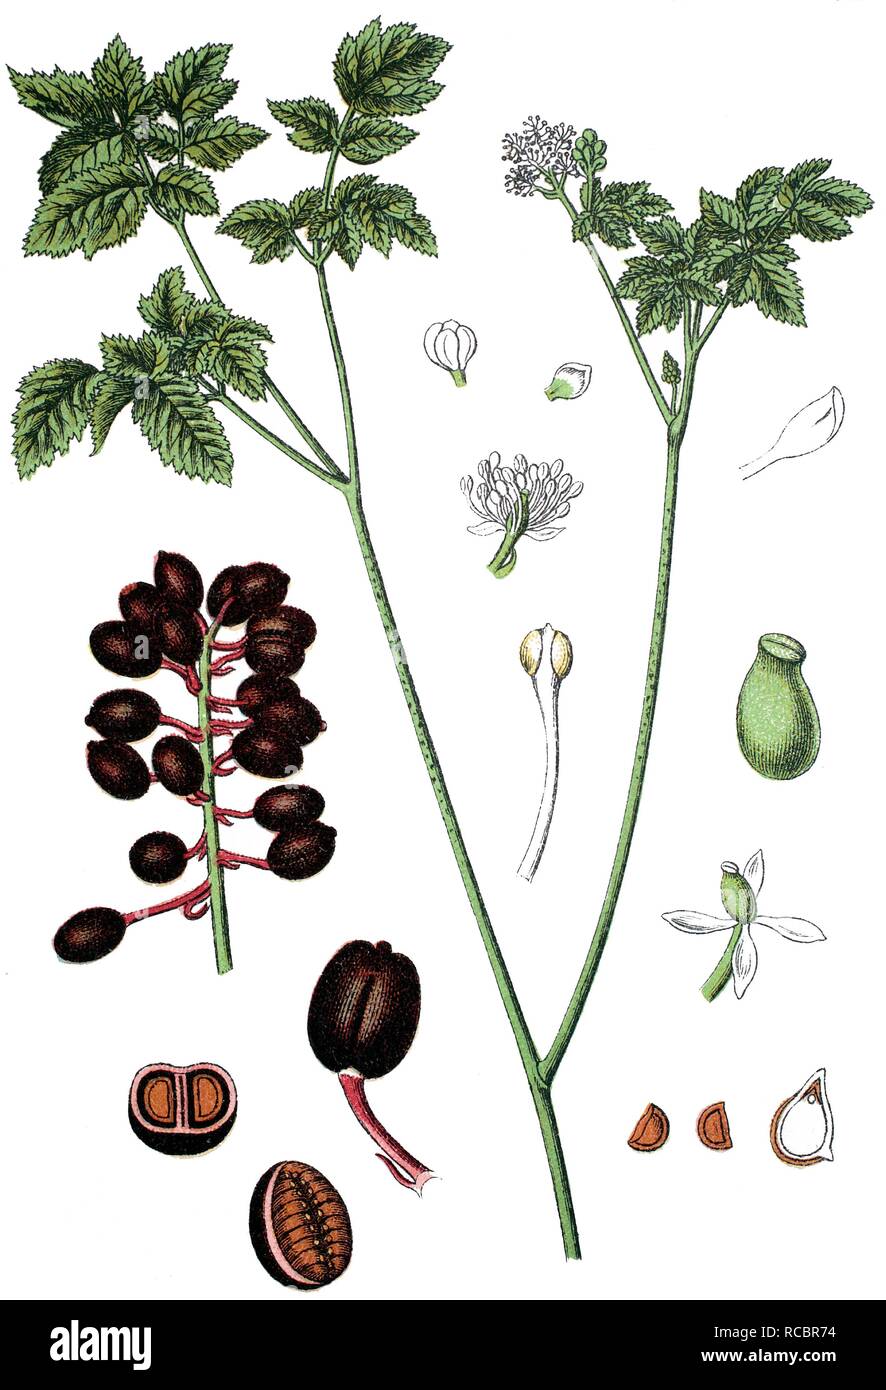 Eurasian Baneberry or Herb Christopher (Actaea spicata L.), medicinal plant, useful plant, chromolithograph, circa 1790 Stock Photo